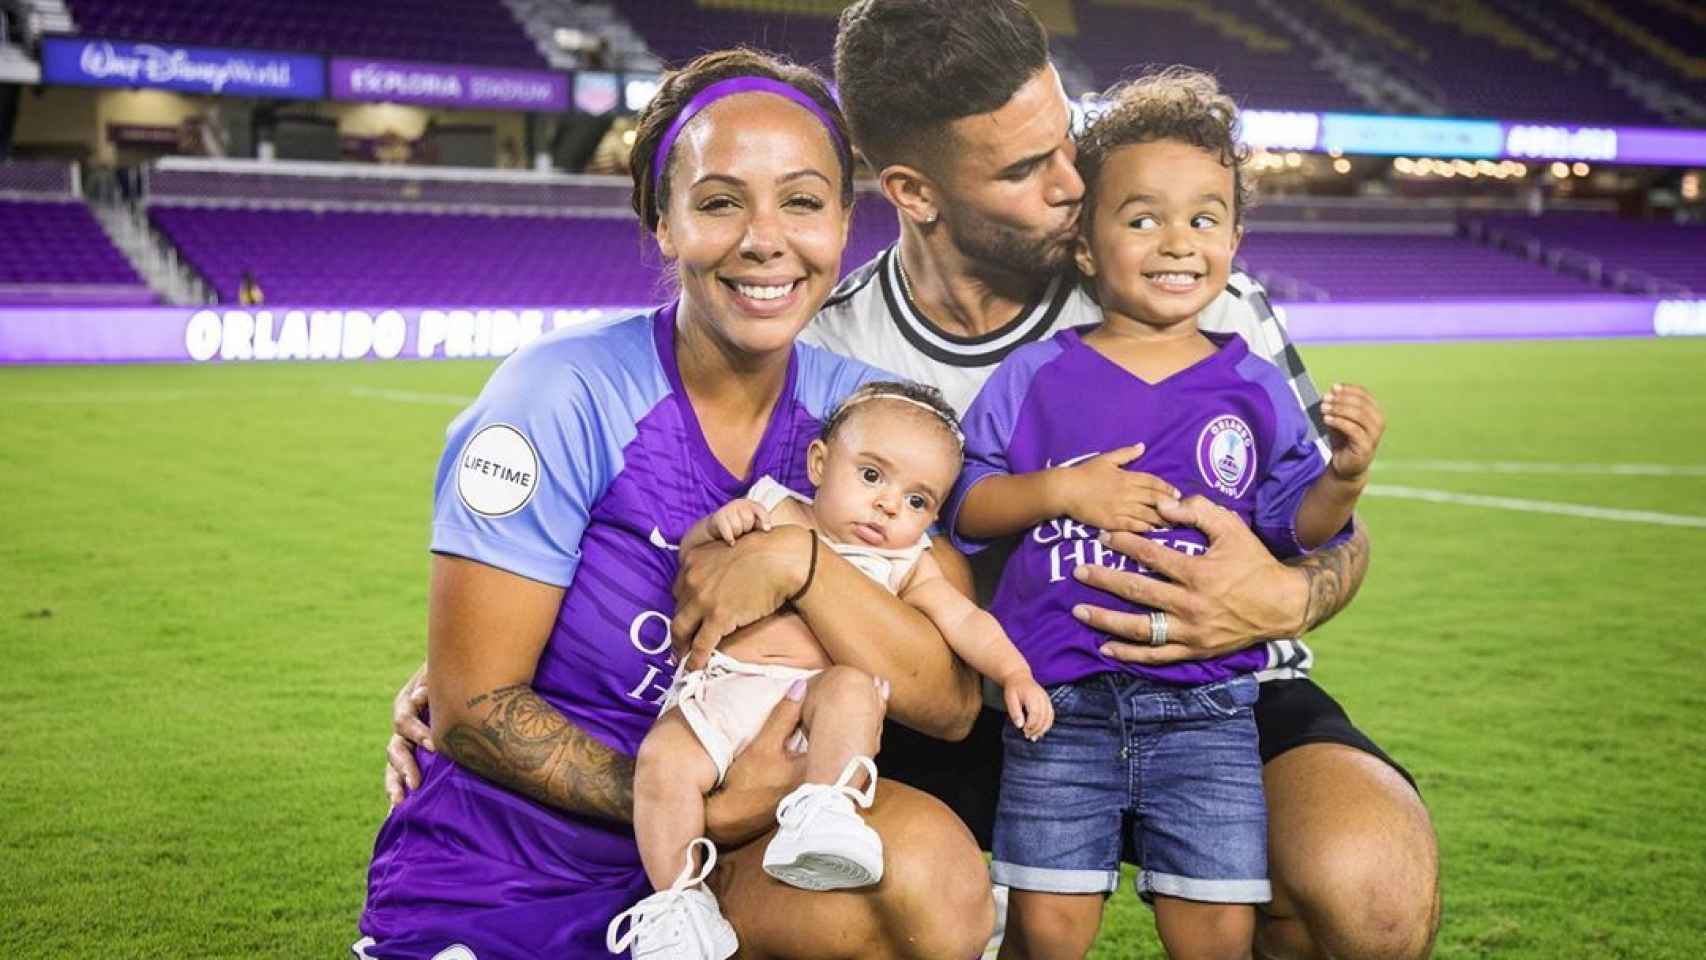 Sydney Lerroux junto a su pareja y sus hijos sobre el césped de un estadio